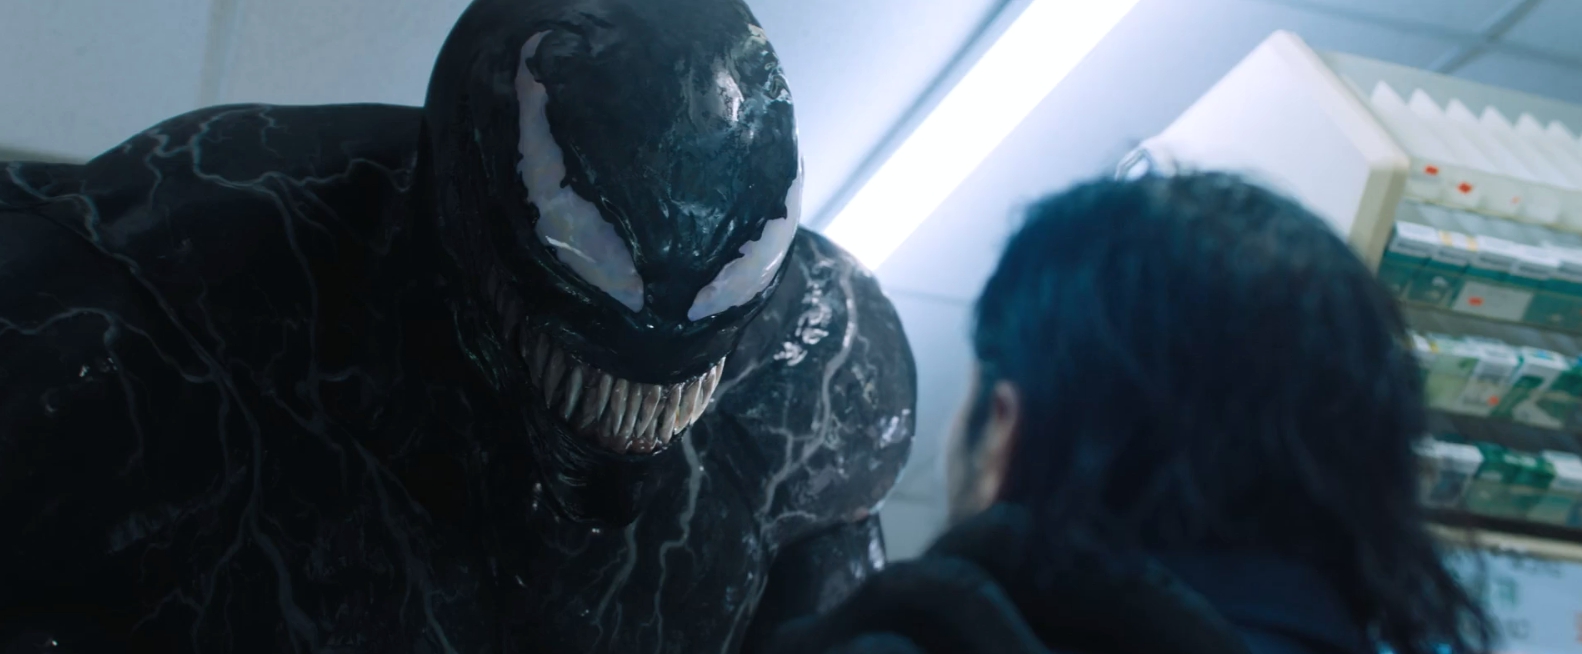 Venom Movie Review